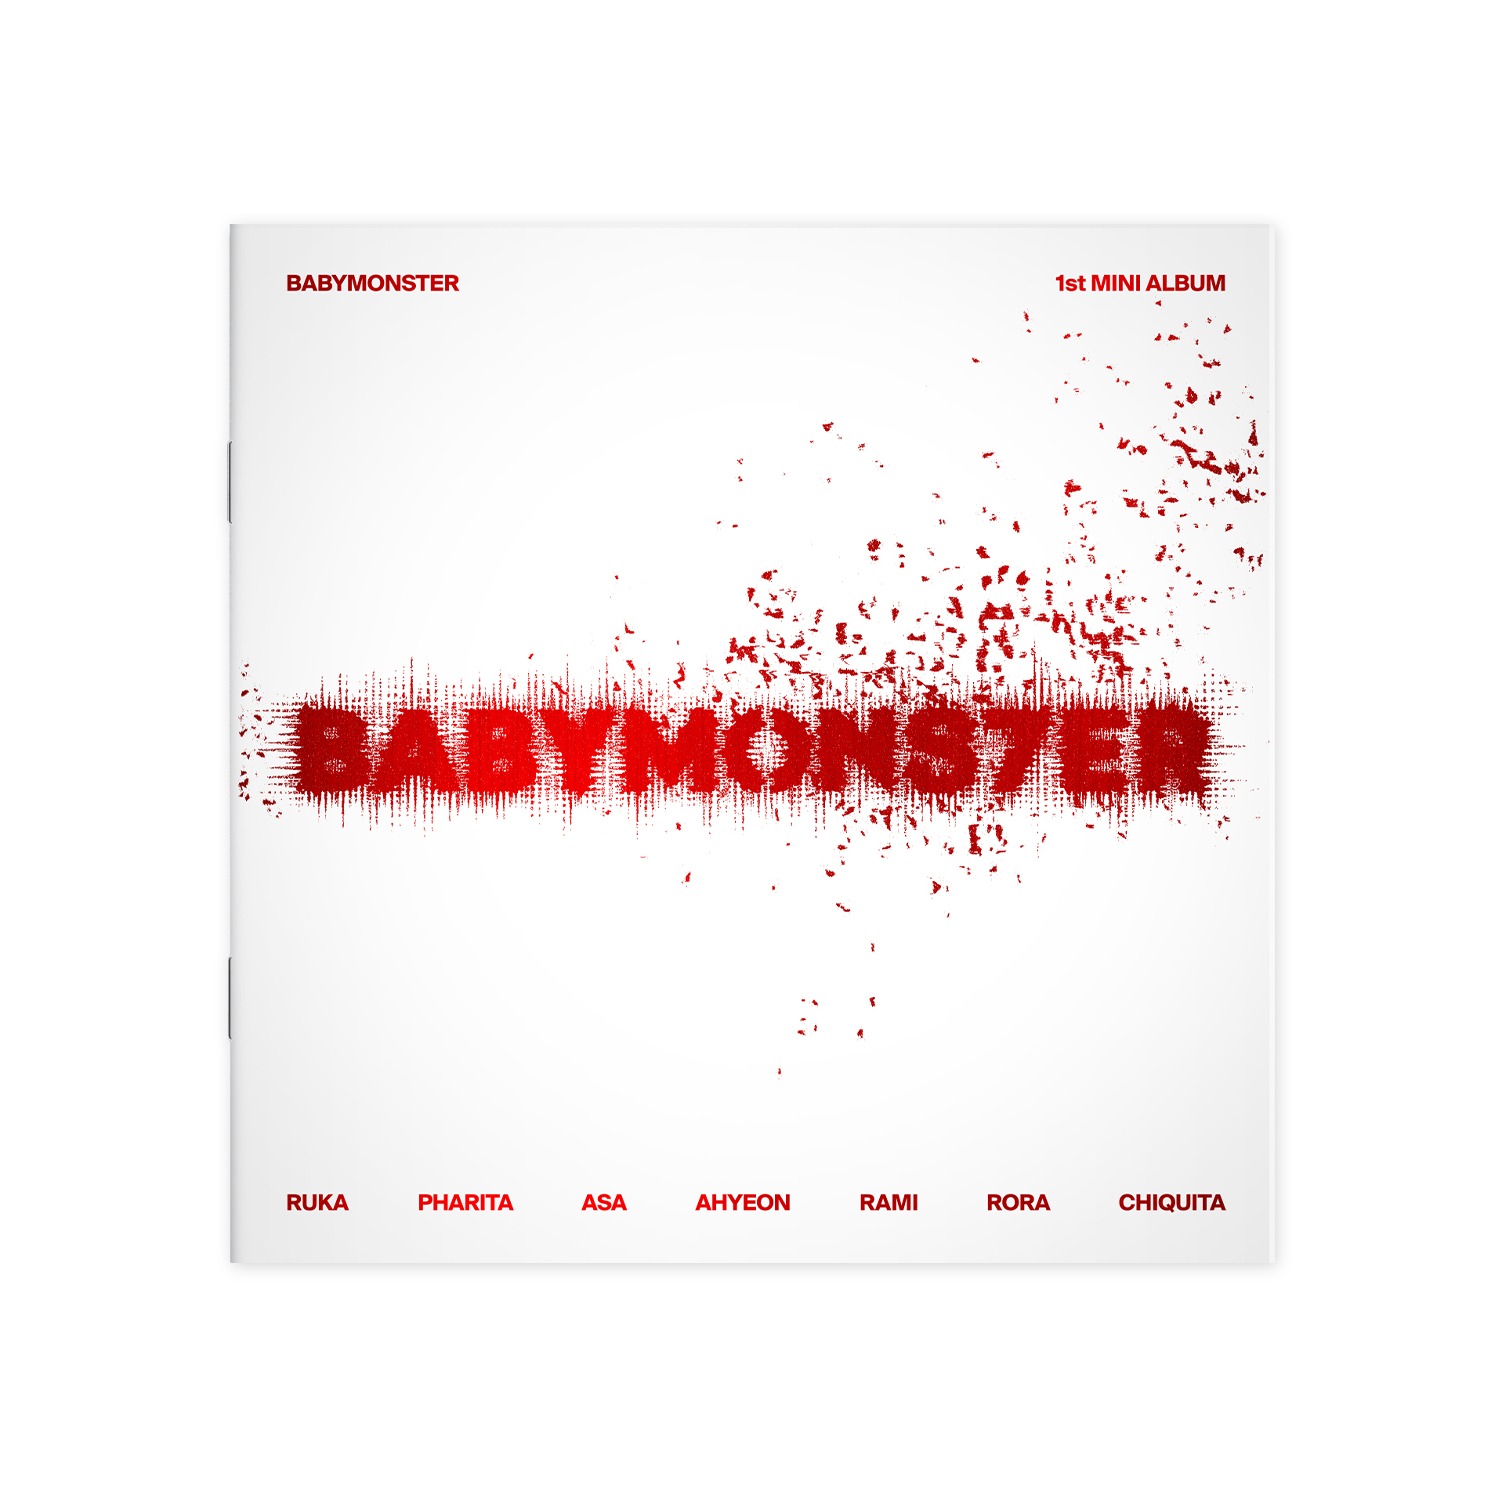 [대량구매] BABYMONSTER 1st MINI ALBUM [BABYMONS7ER] PHOTOBOOK VER. YG SELECT